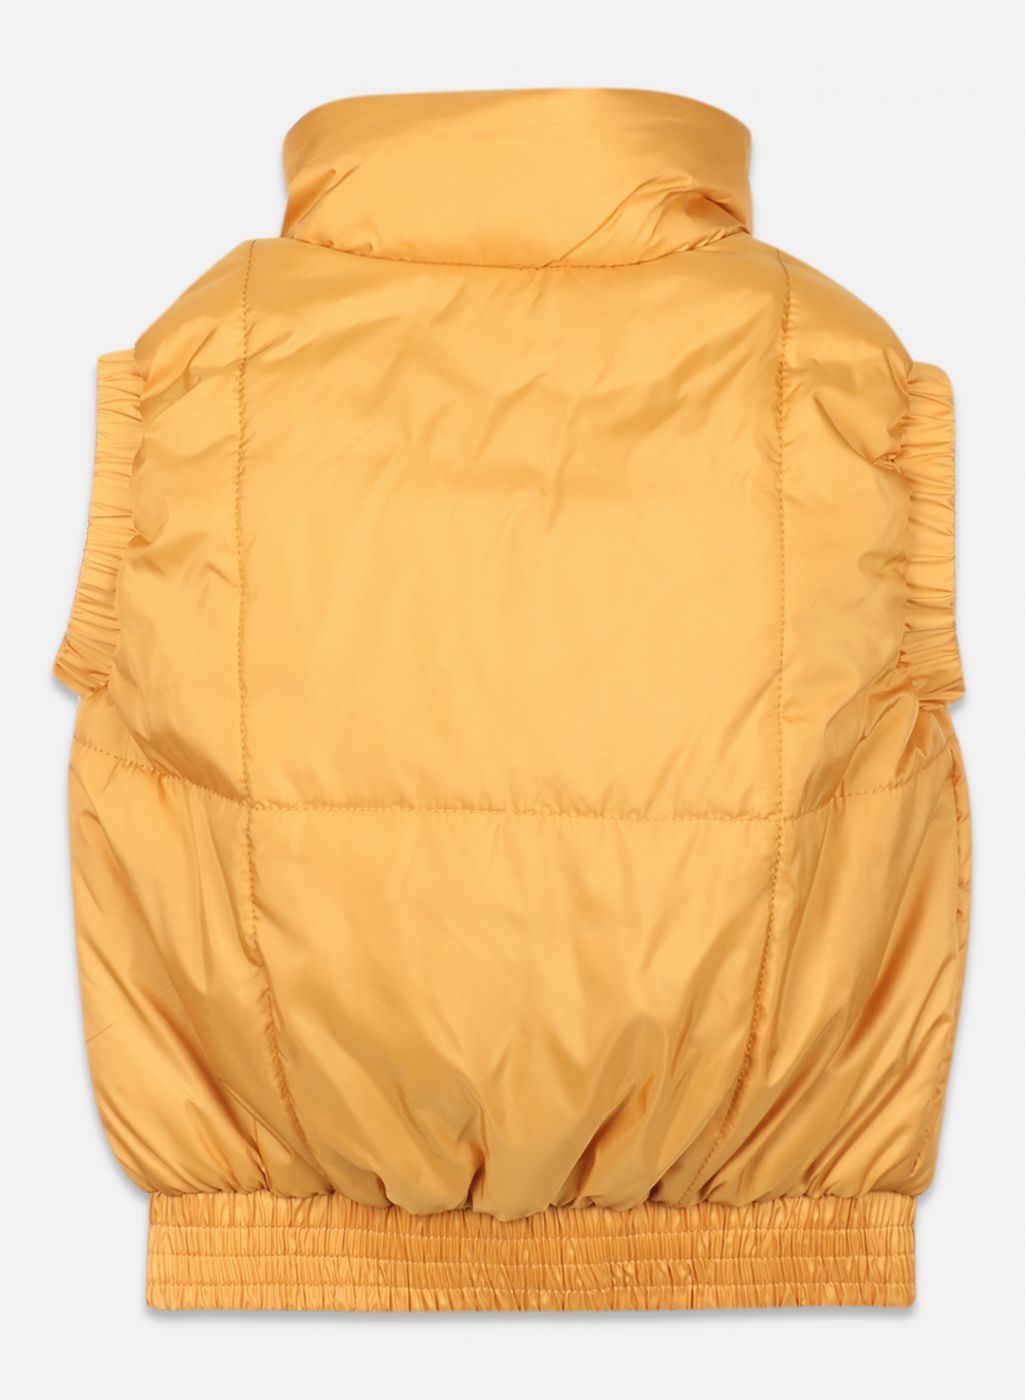 Girls Mustard Solid Jacket